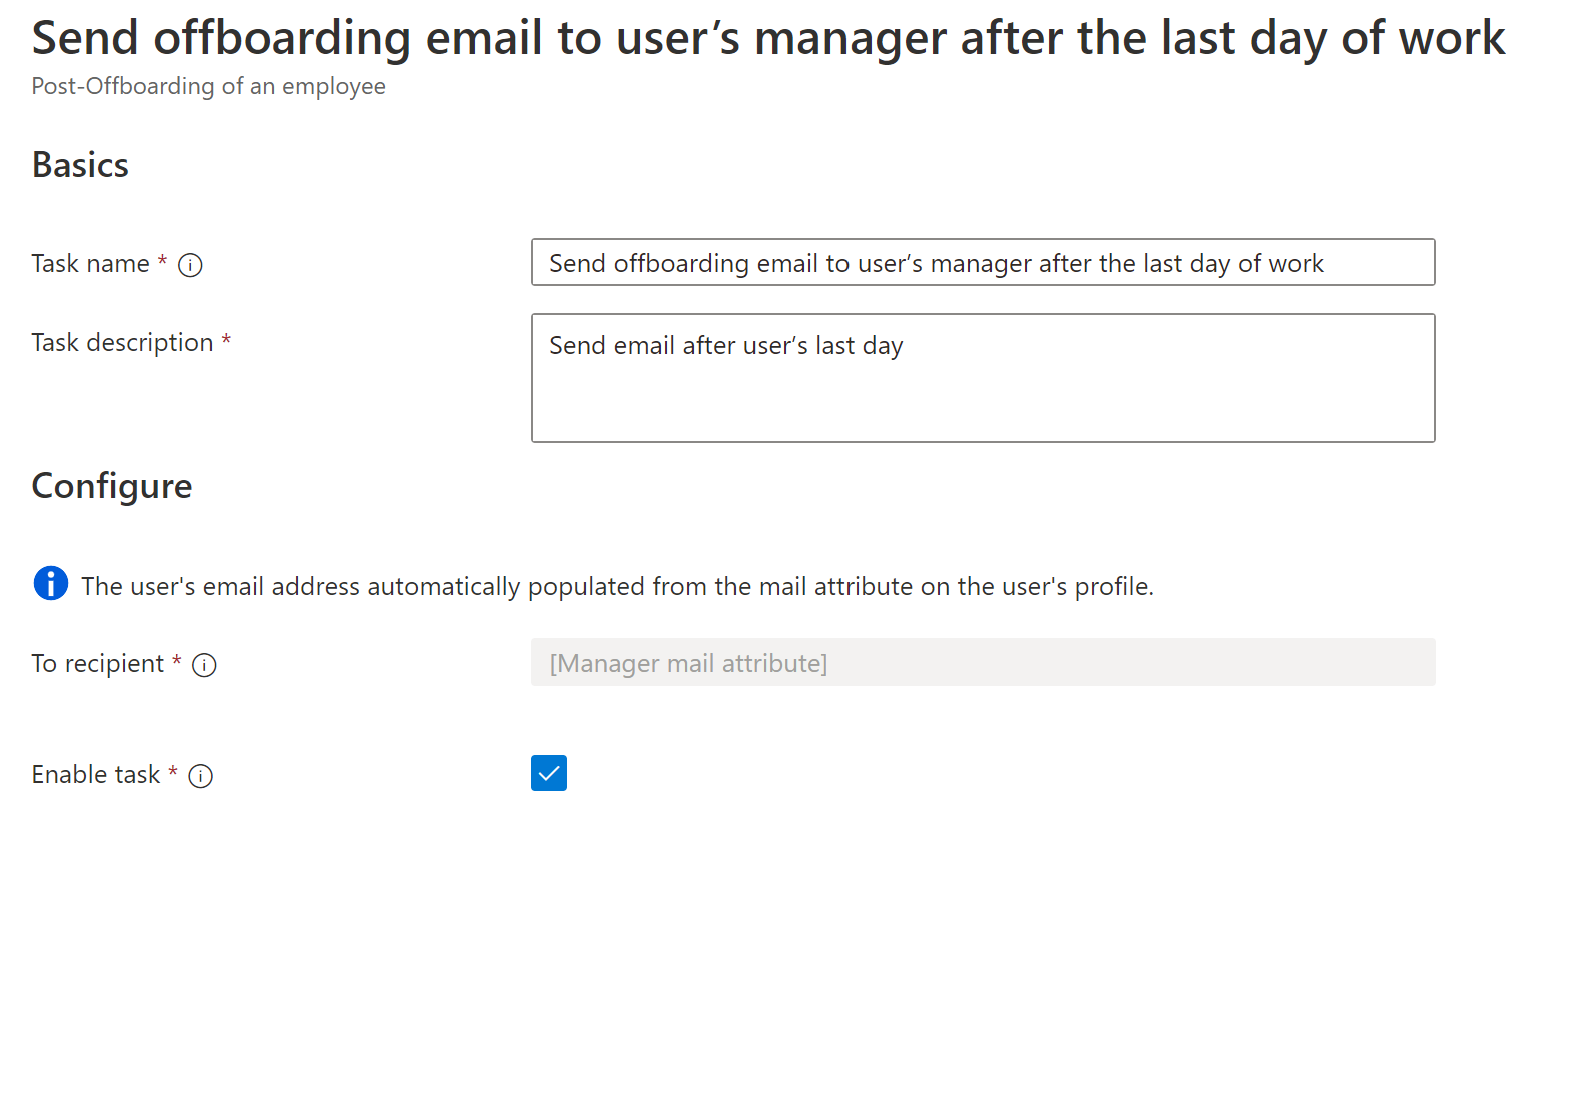 ワークフロー タスクのスクリーンショット: ユーザーの最終在籍日の後でユーザーのマネージャーにオフボーディング メールを送信する。